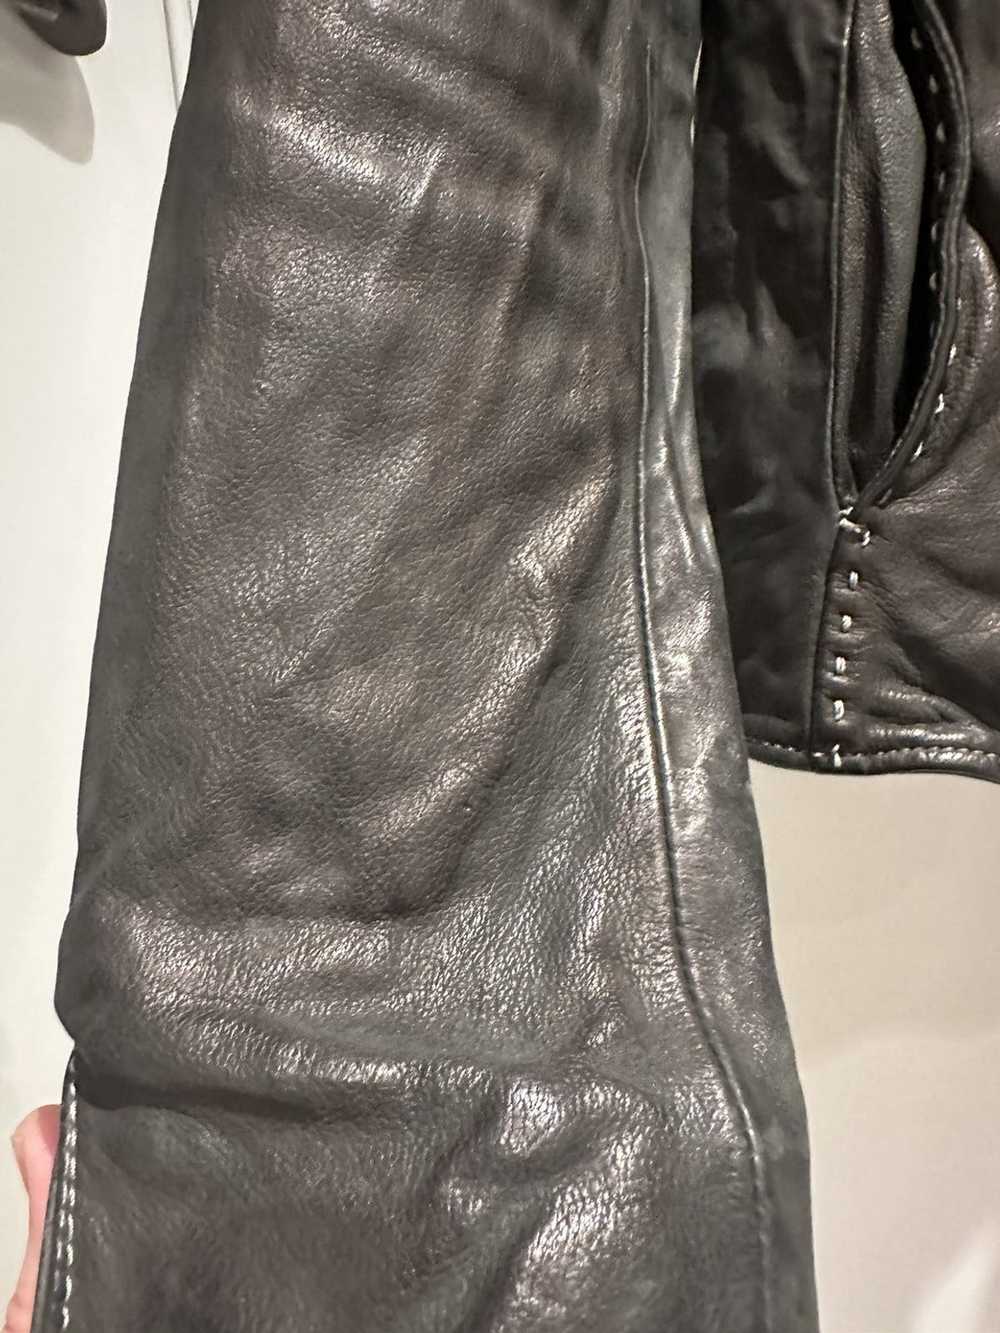 Incarnation Incarnation leather jacket - image 11